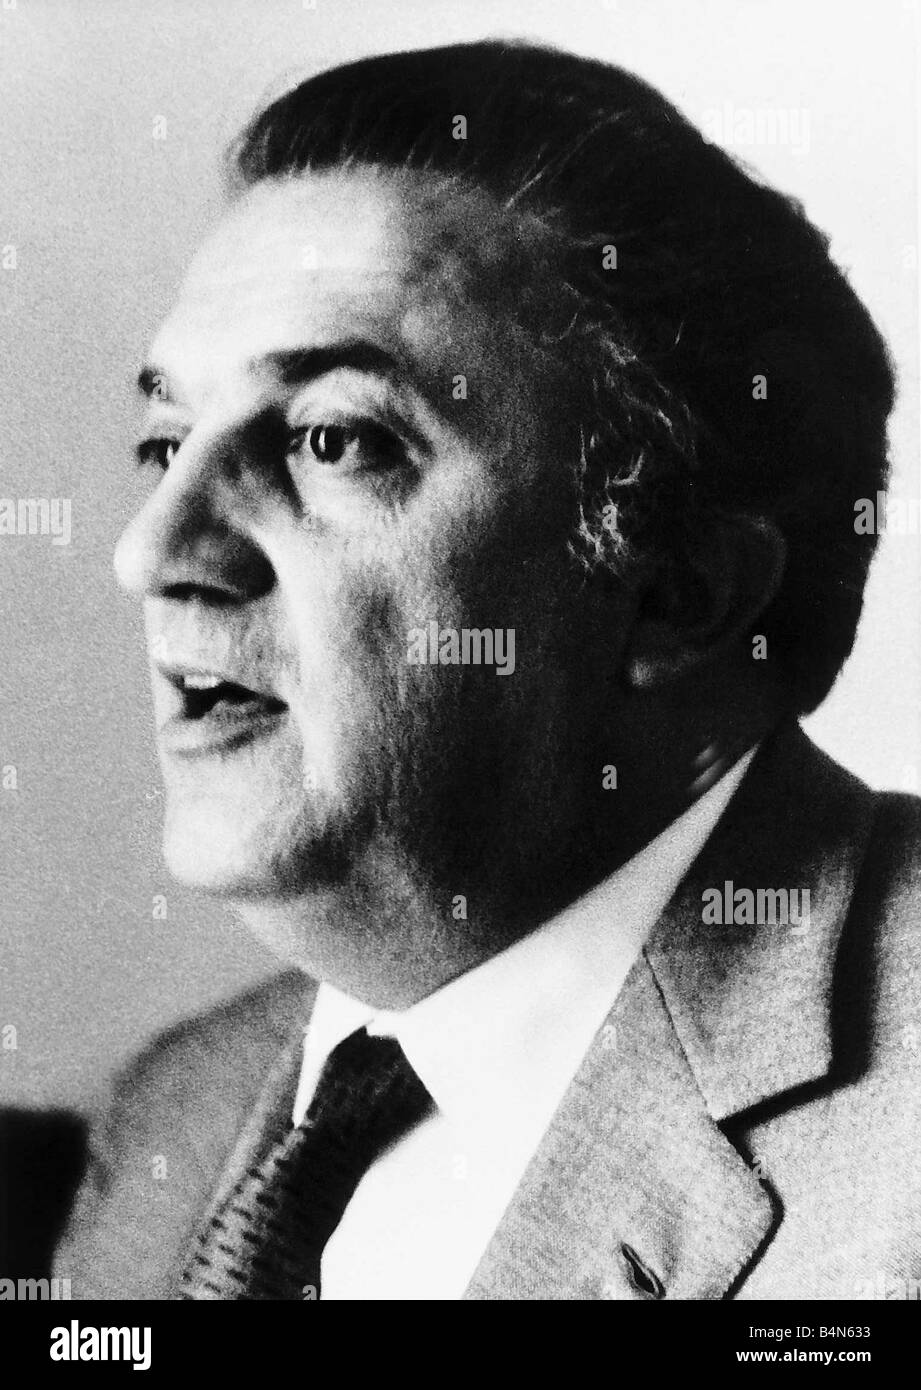 Frederico Fellini réalisateur italien 1969 Banque D'Images